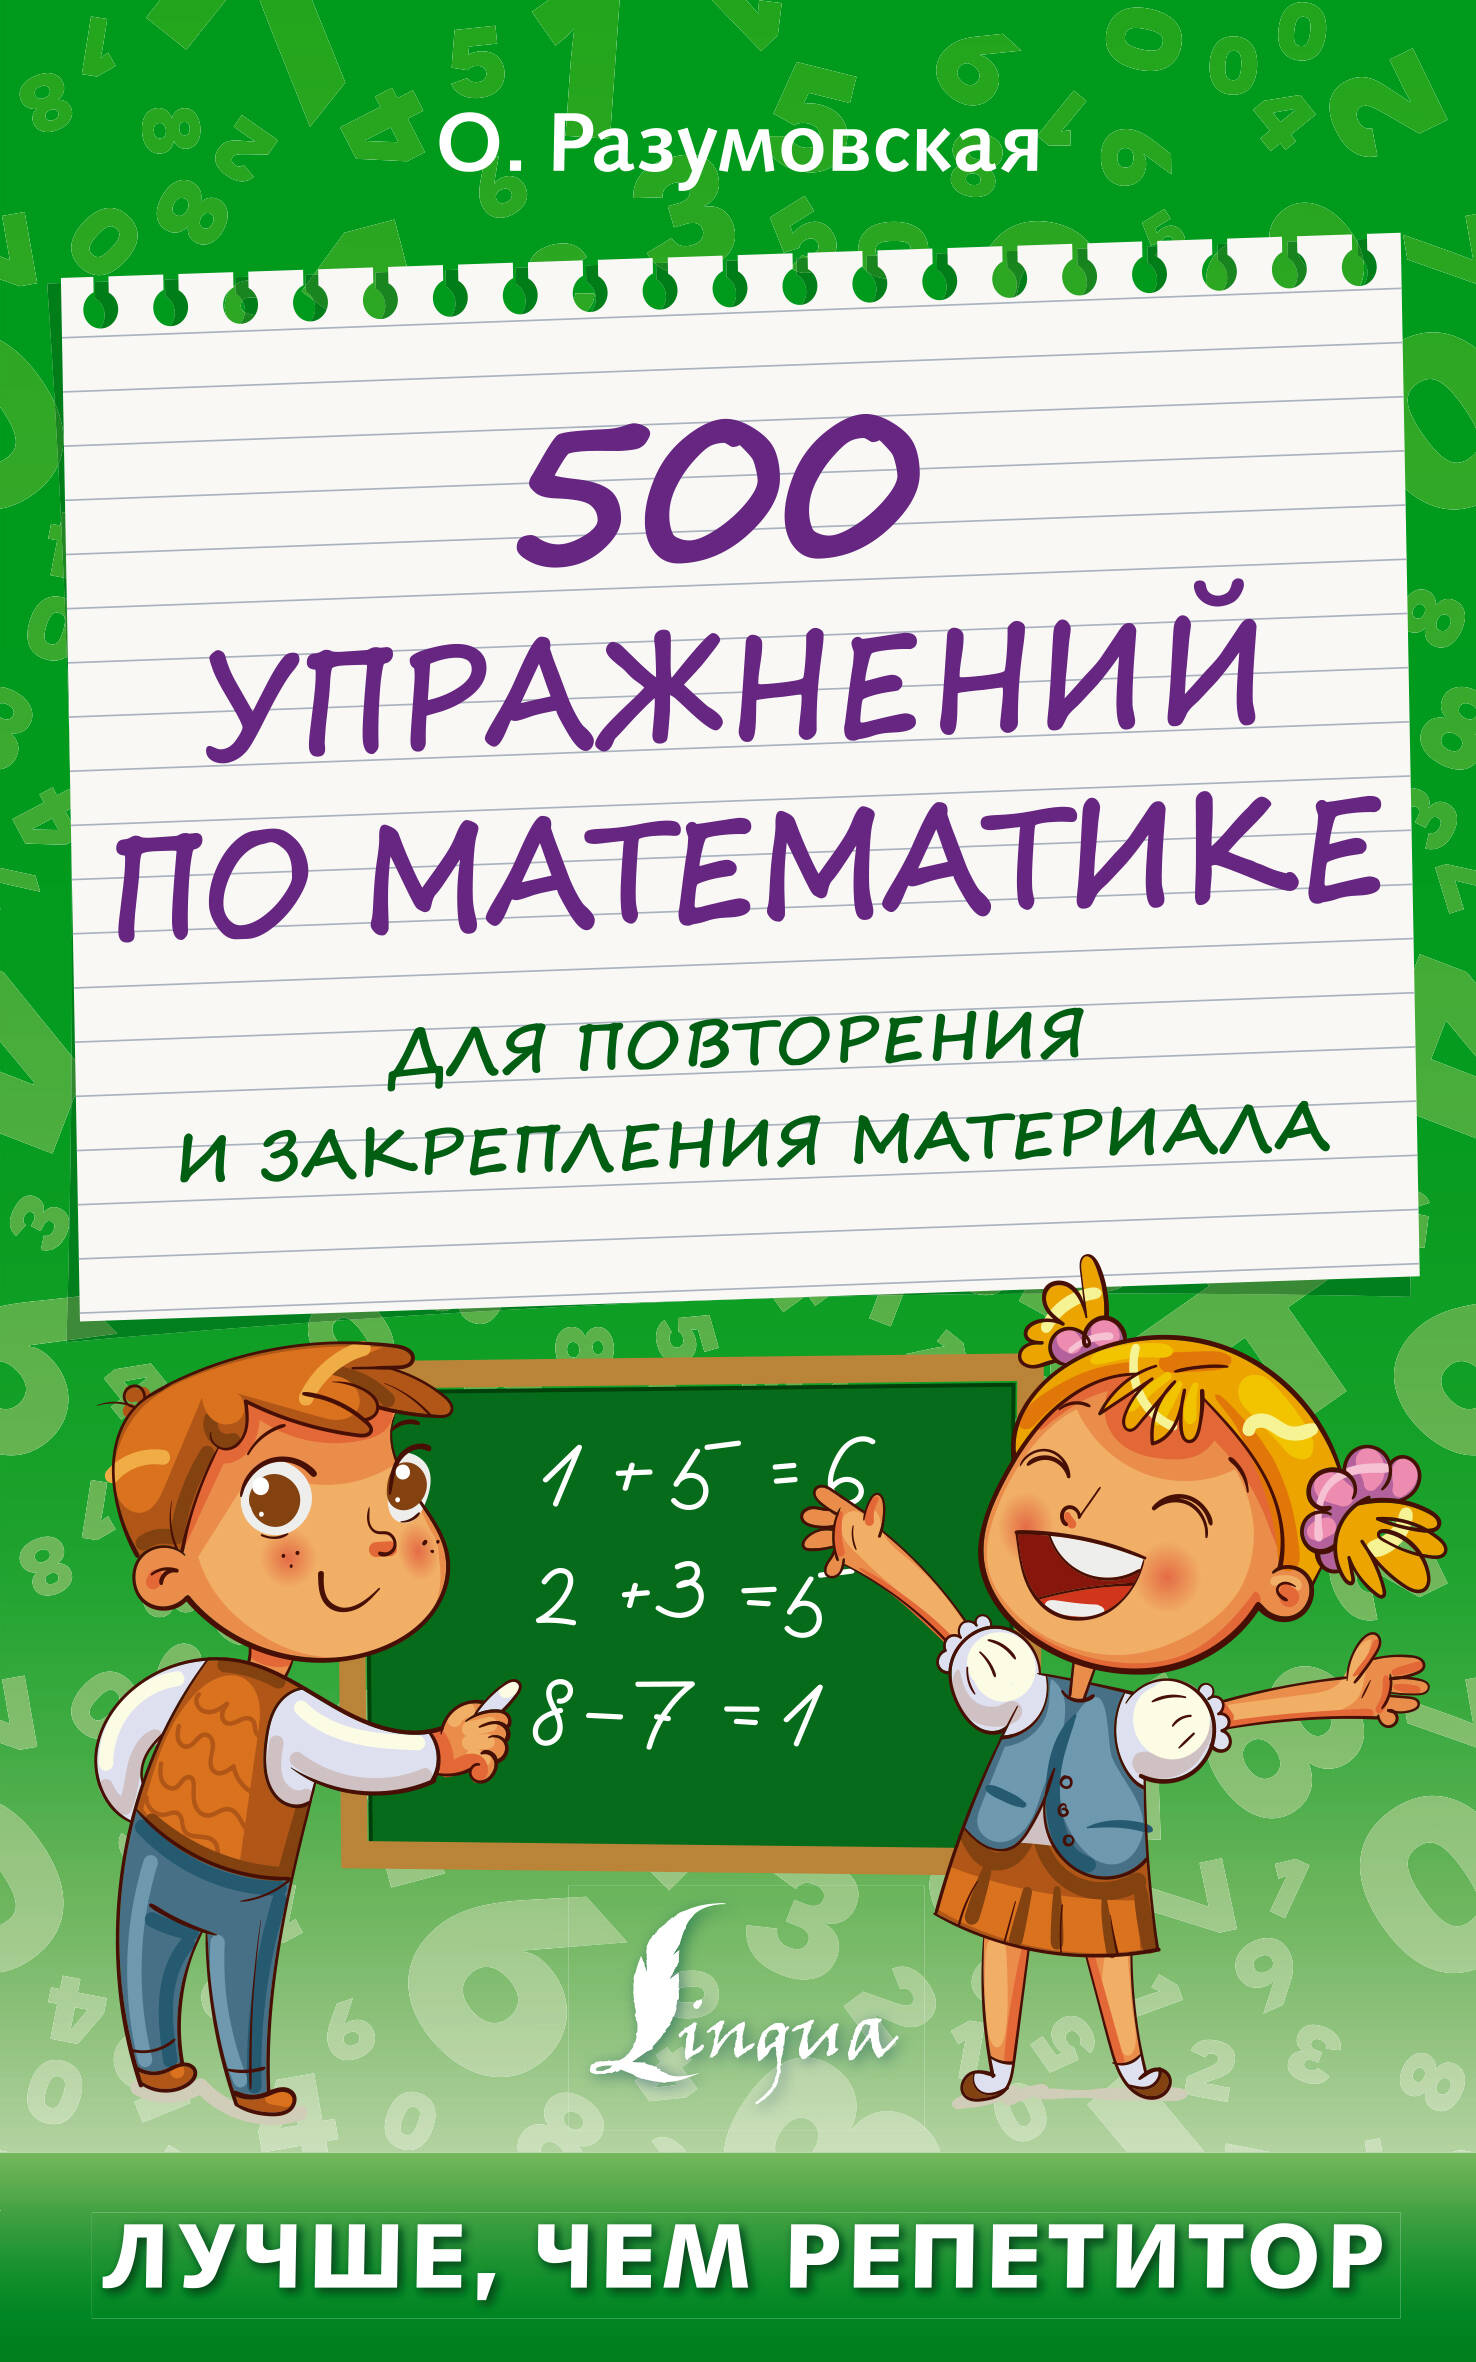 Разумовская Ольга Константиновна - 500 упражнений по математике для повторения и закрепления материала